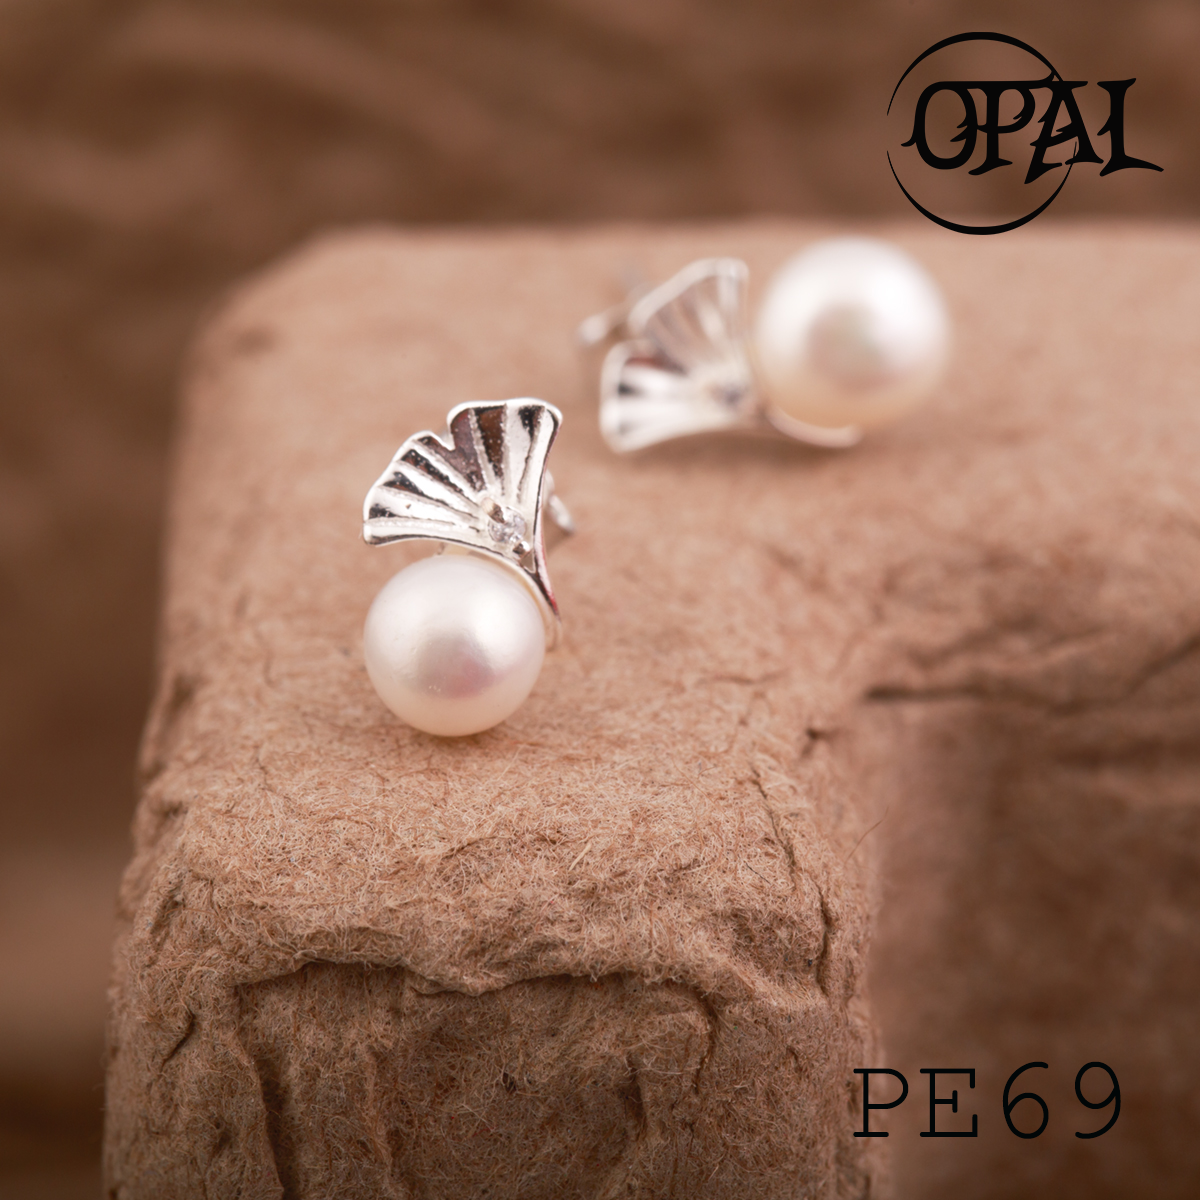  PE69 - Hoa tai bạc đính ngọc trai OPAL 